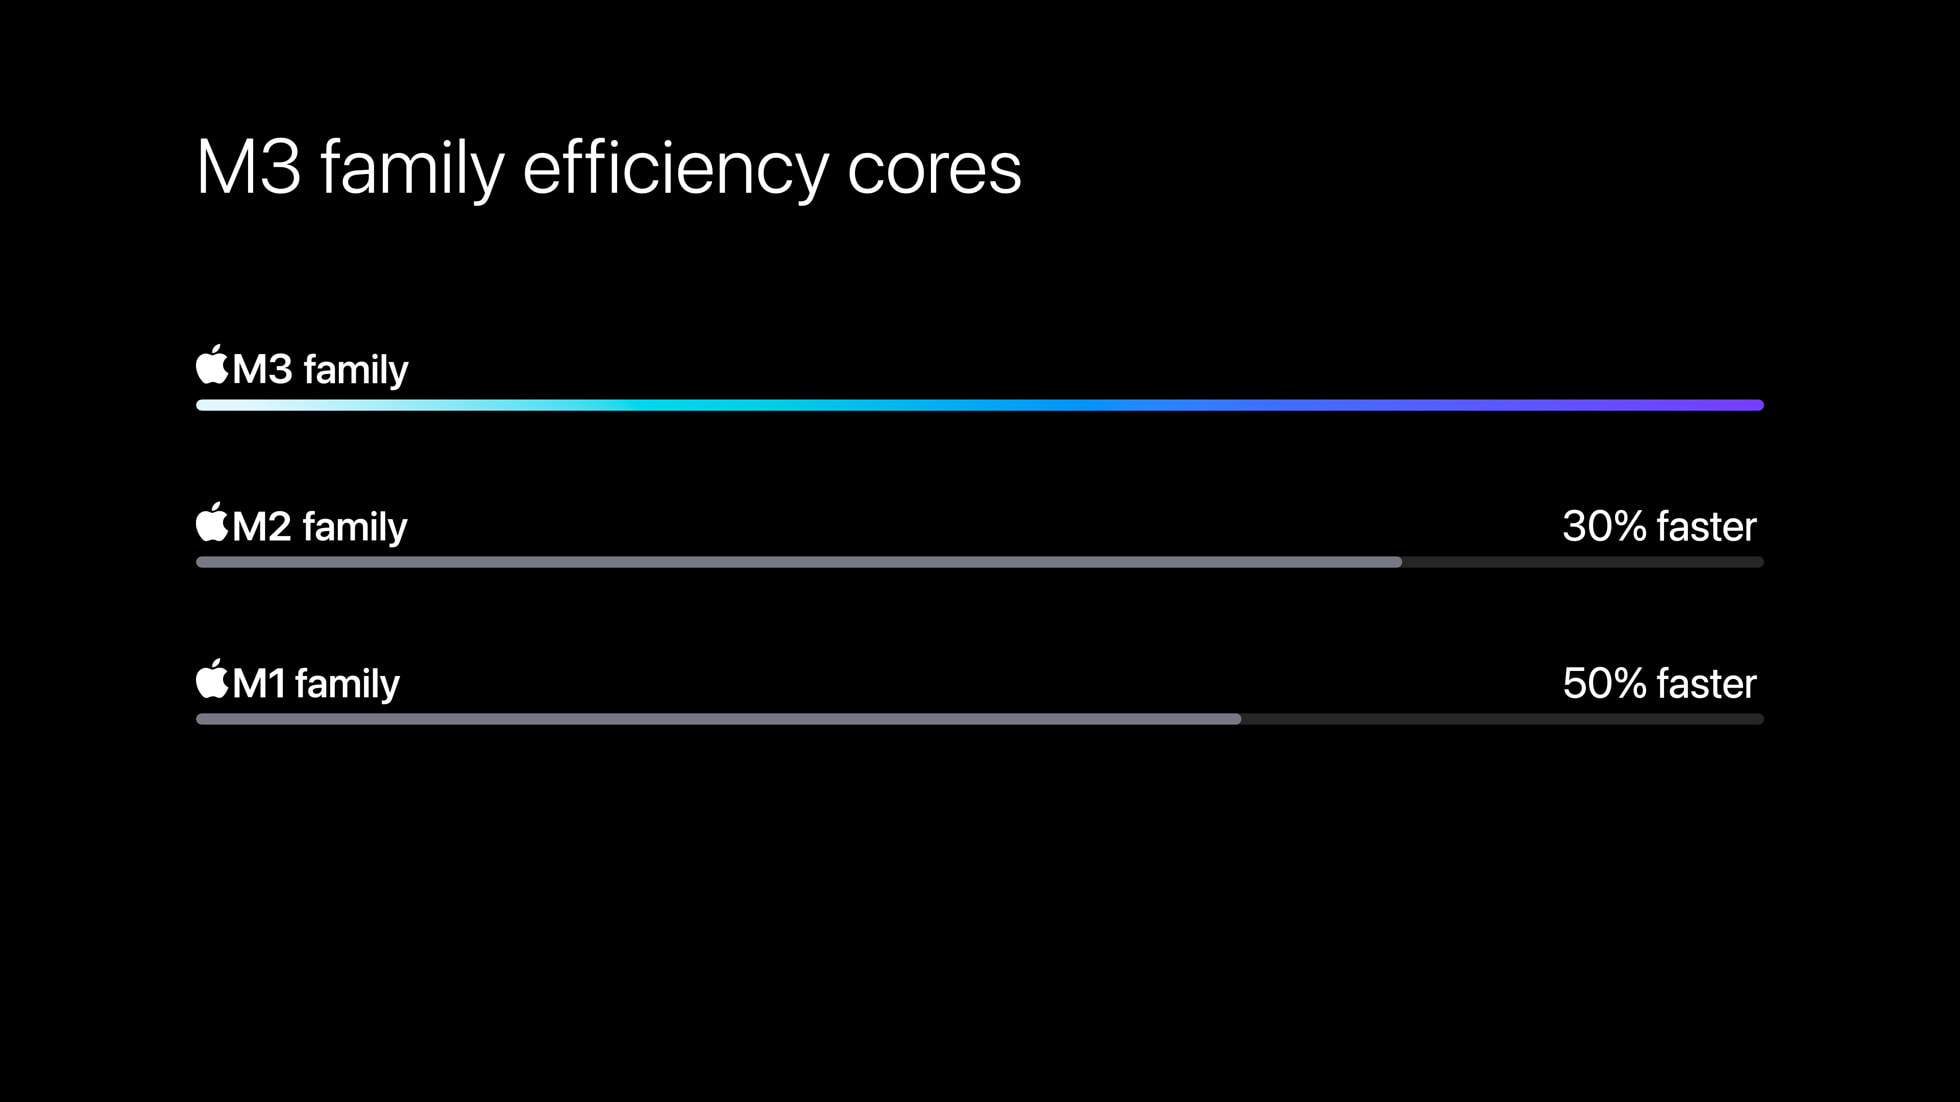 Apple-M3-chip-series-efficiency-cores-comparison-231030_big.jpg.large_2x